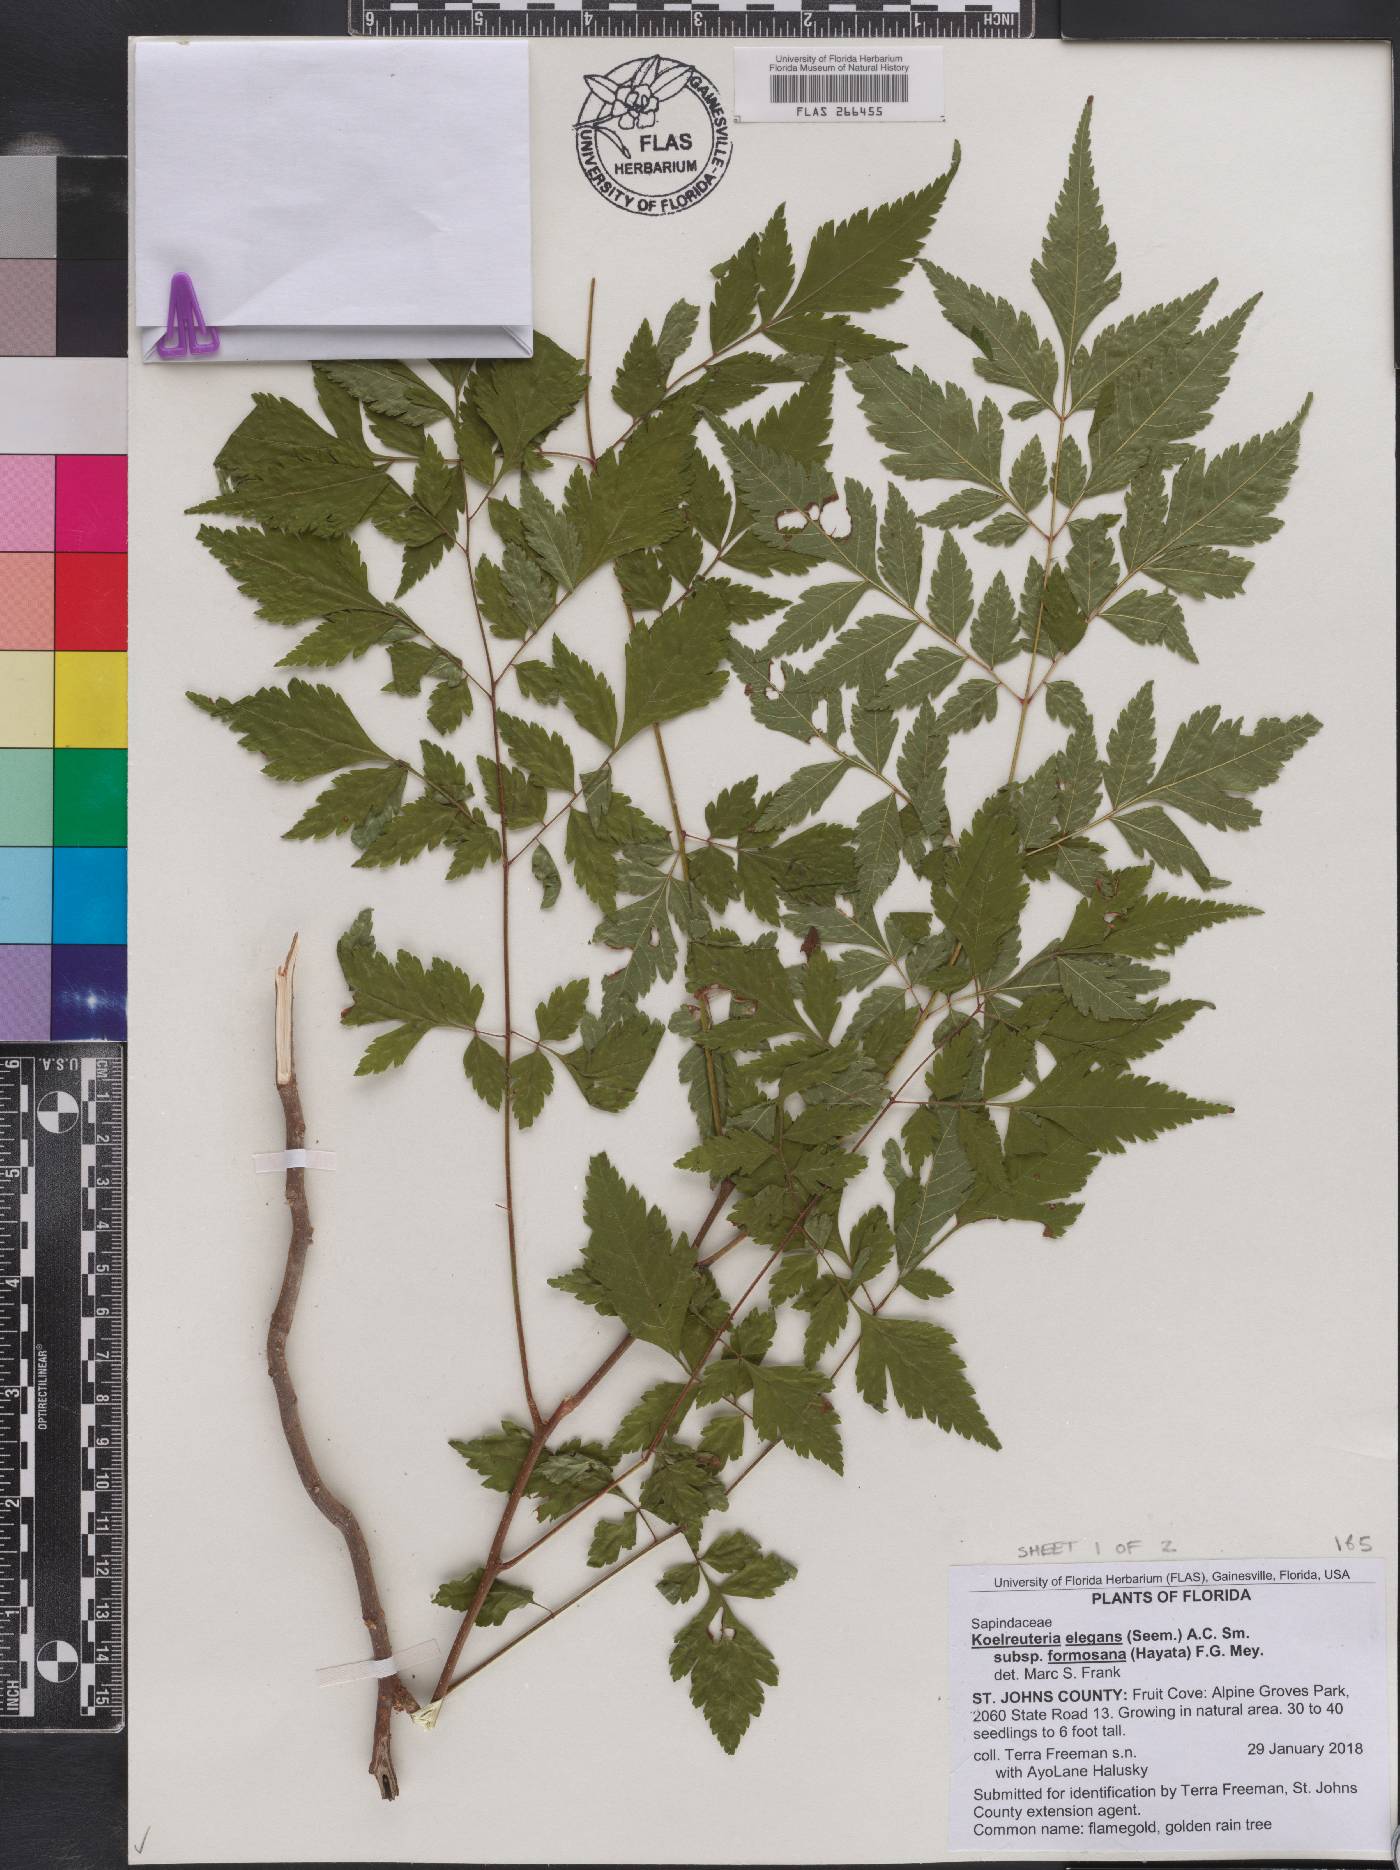 Koelreuteria elegans subsp. formosana image